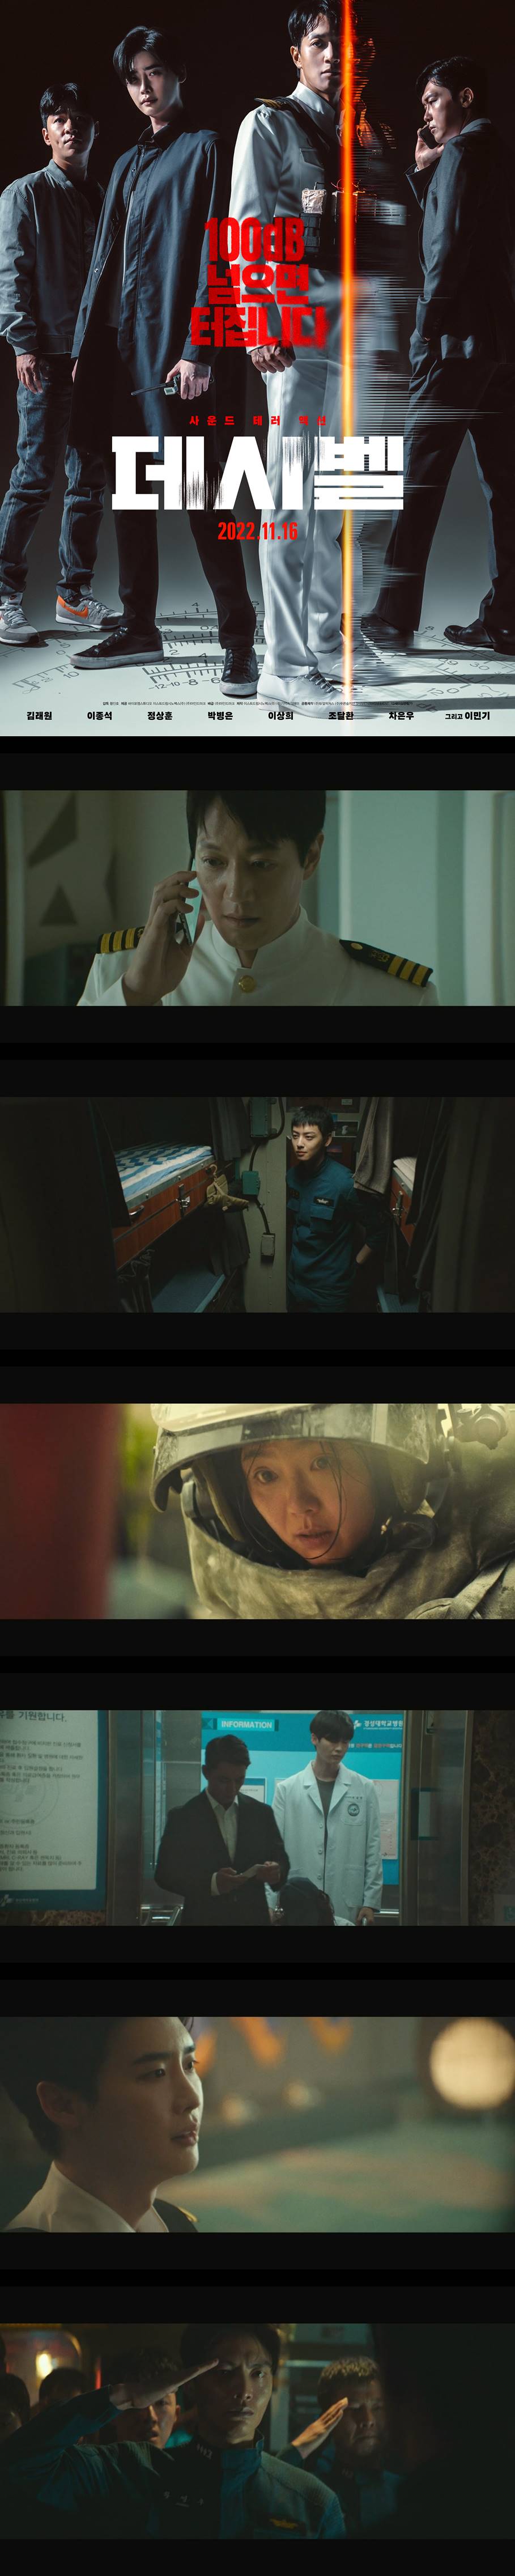 [데시벨] 김래원 이종석 차은우 박병은 정상훈 도심 한복판에서 벌어지는 사운드 테러 액션